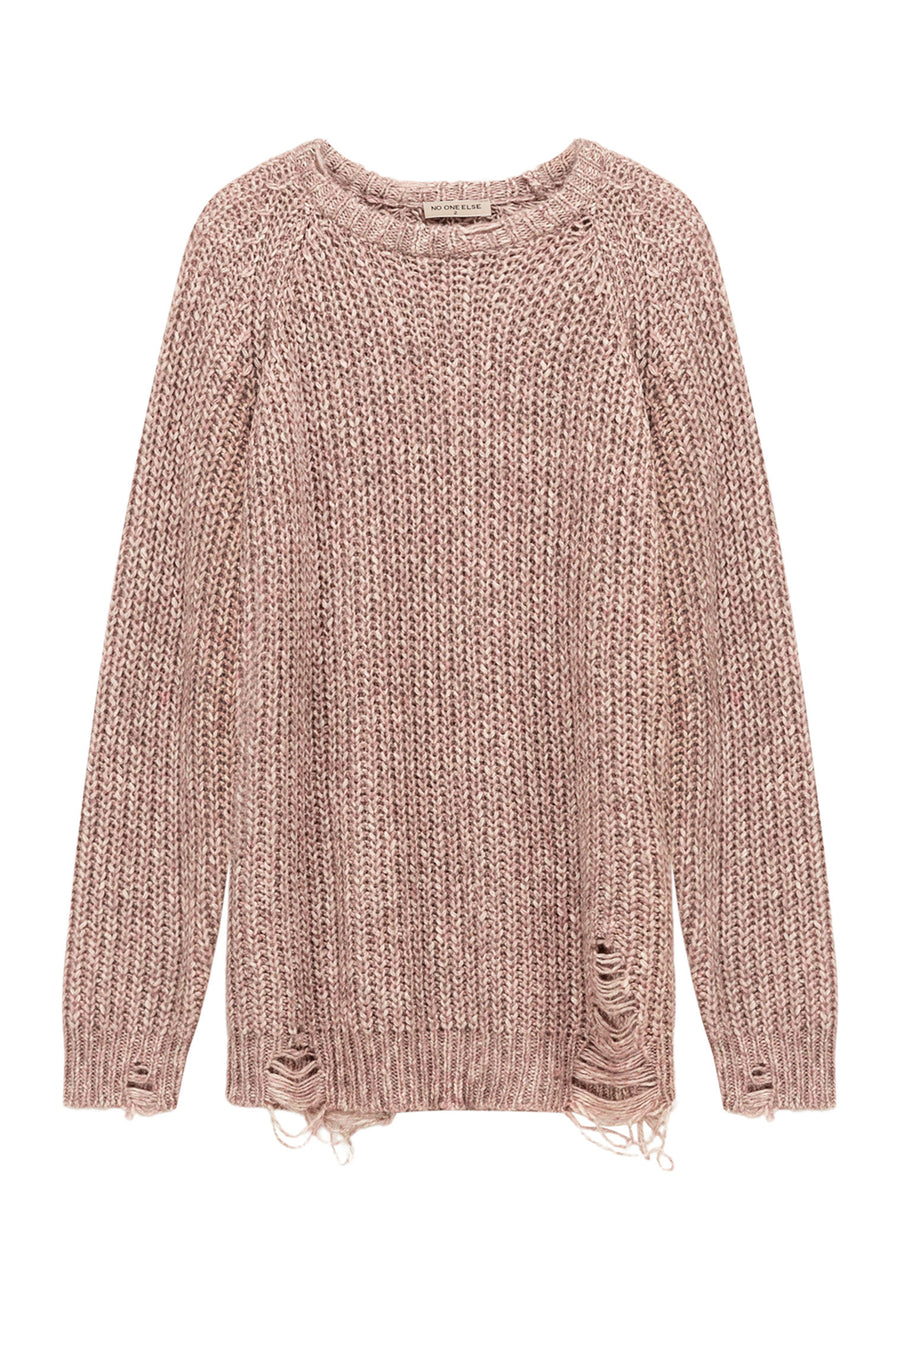 CHUU Loose Fit Raglan Knit Distressed Sweater